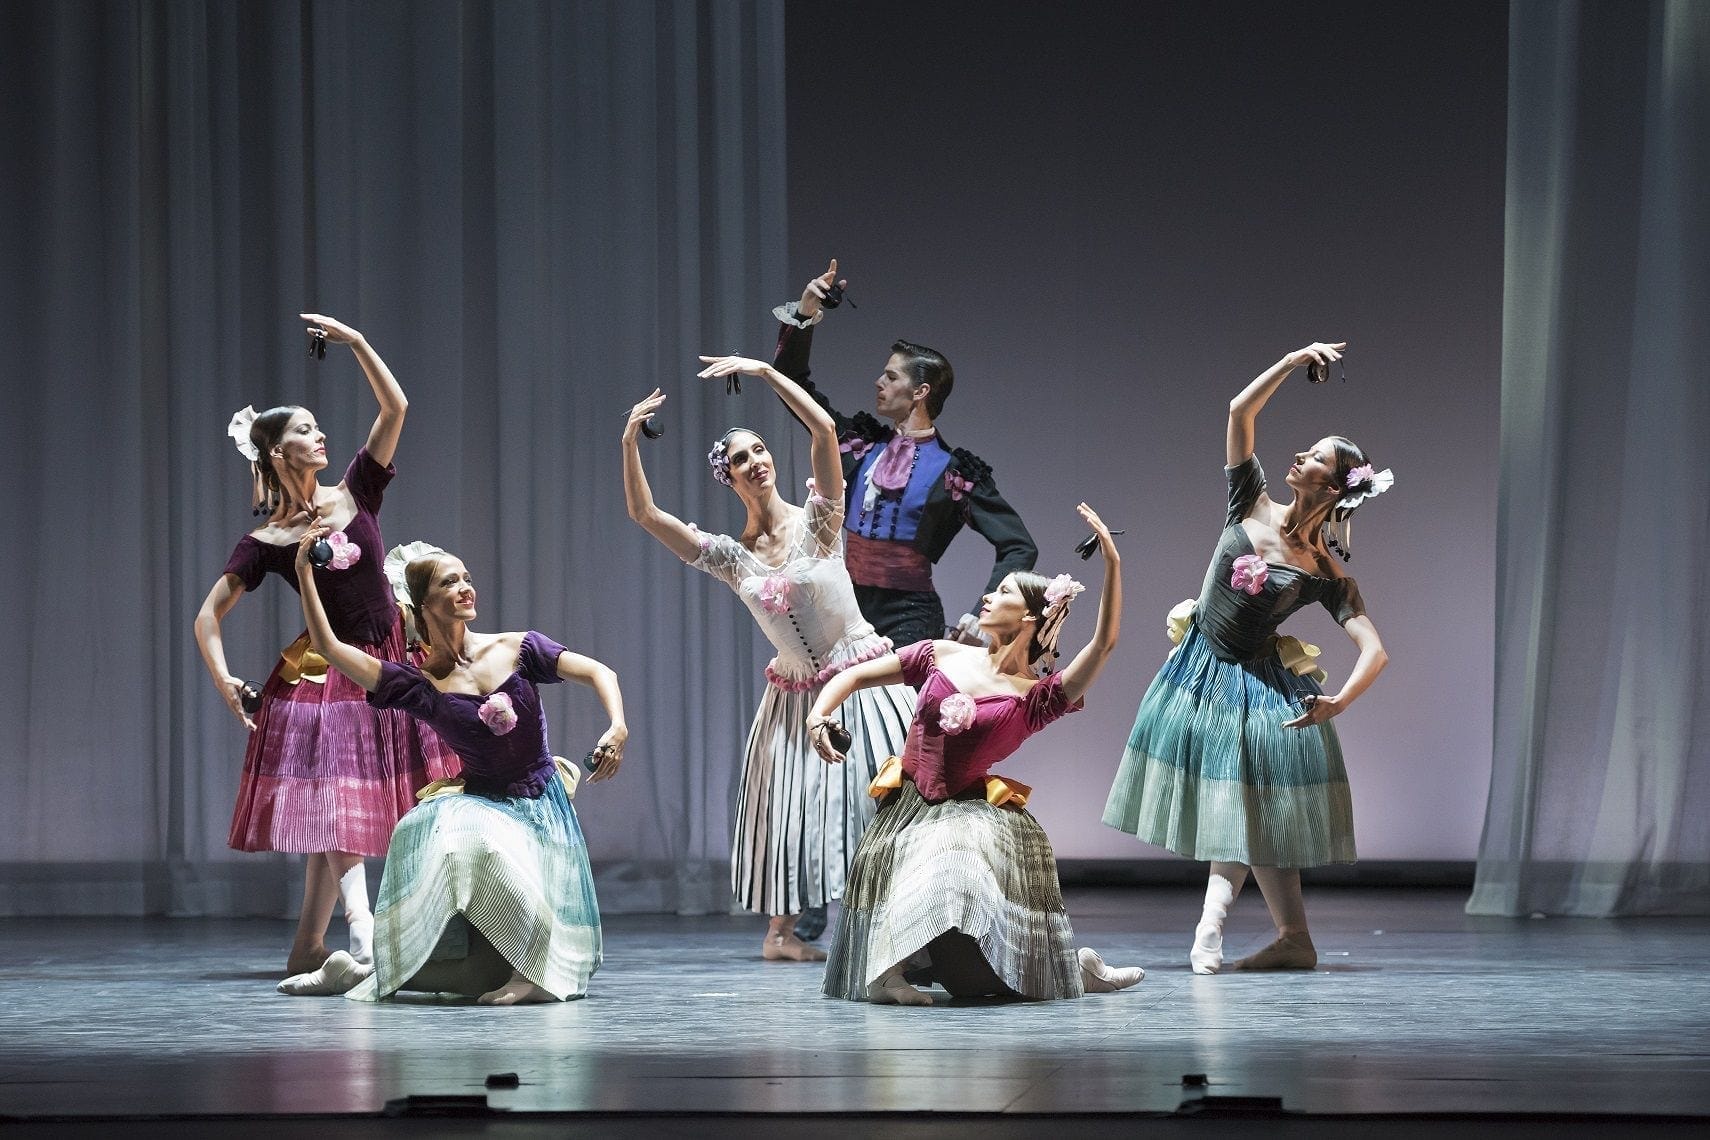 El Ballet Nacional de España hace balance del proyecto pedagógico desarrollado a lo largo de los últimos 8 años bajo la dirección de Antonio Najarro